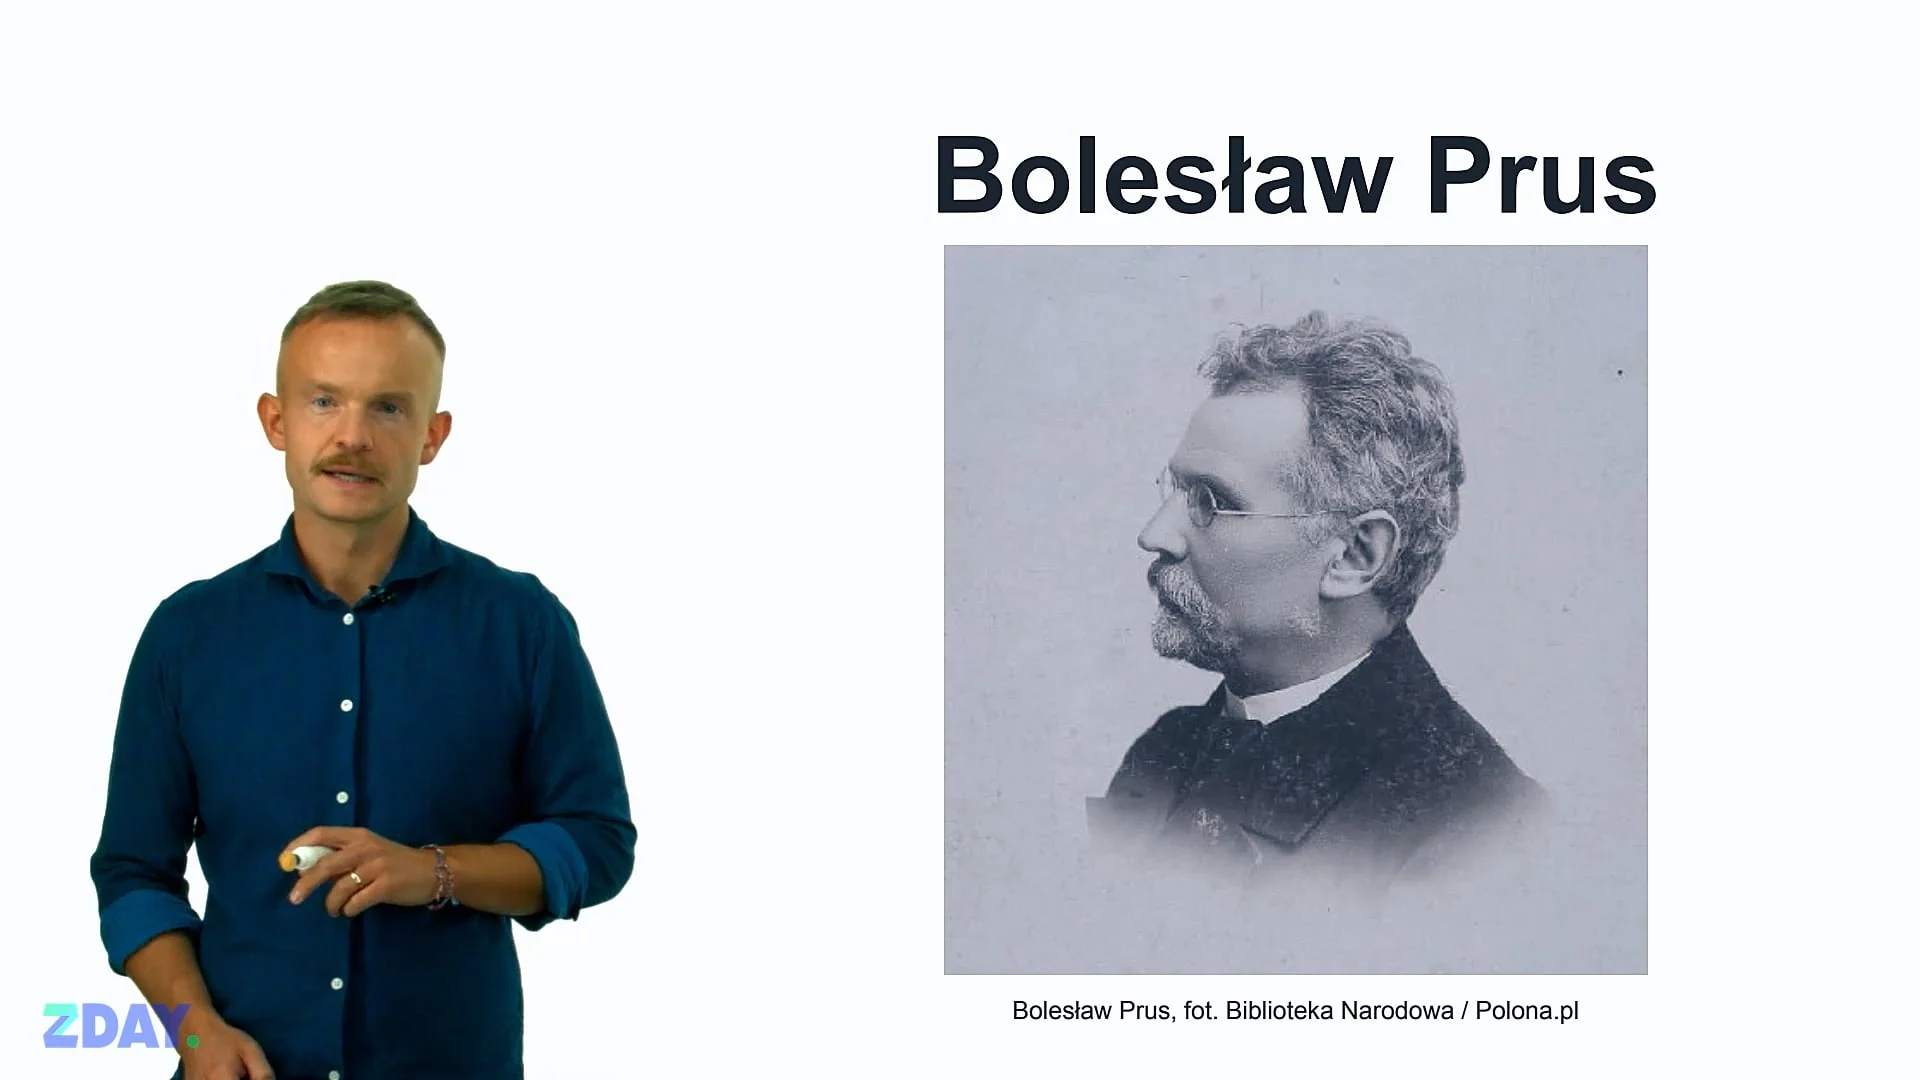 Miniaturka materiału wideo na temat: Bolesław Prus – o autorze. Kliknij, aby obejrzeć materiał.